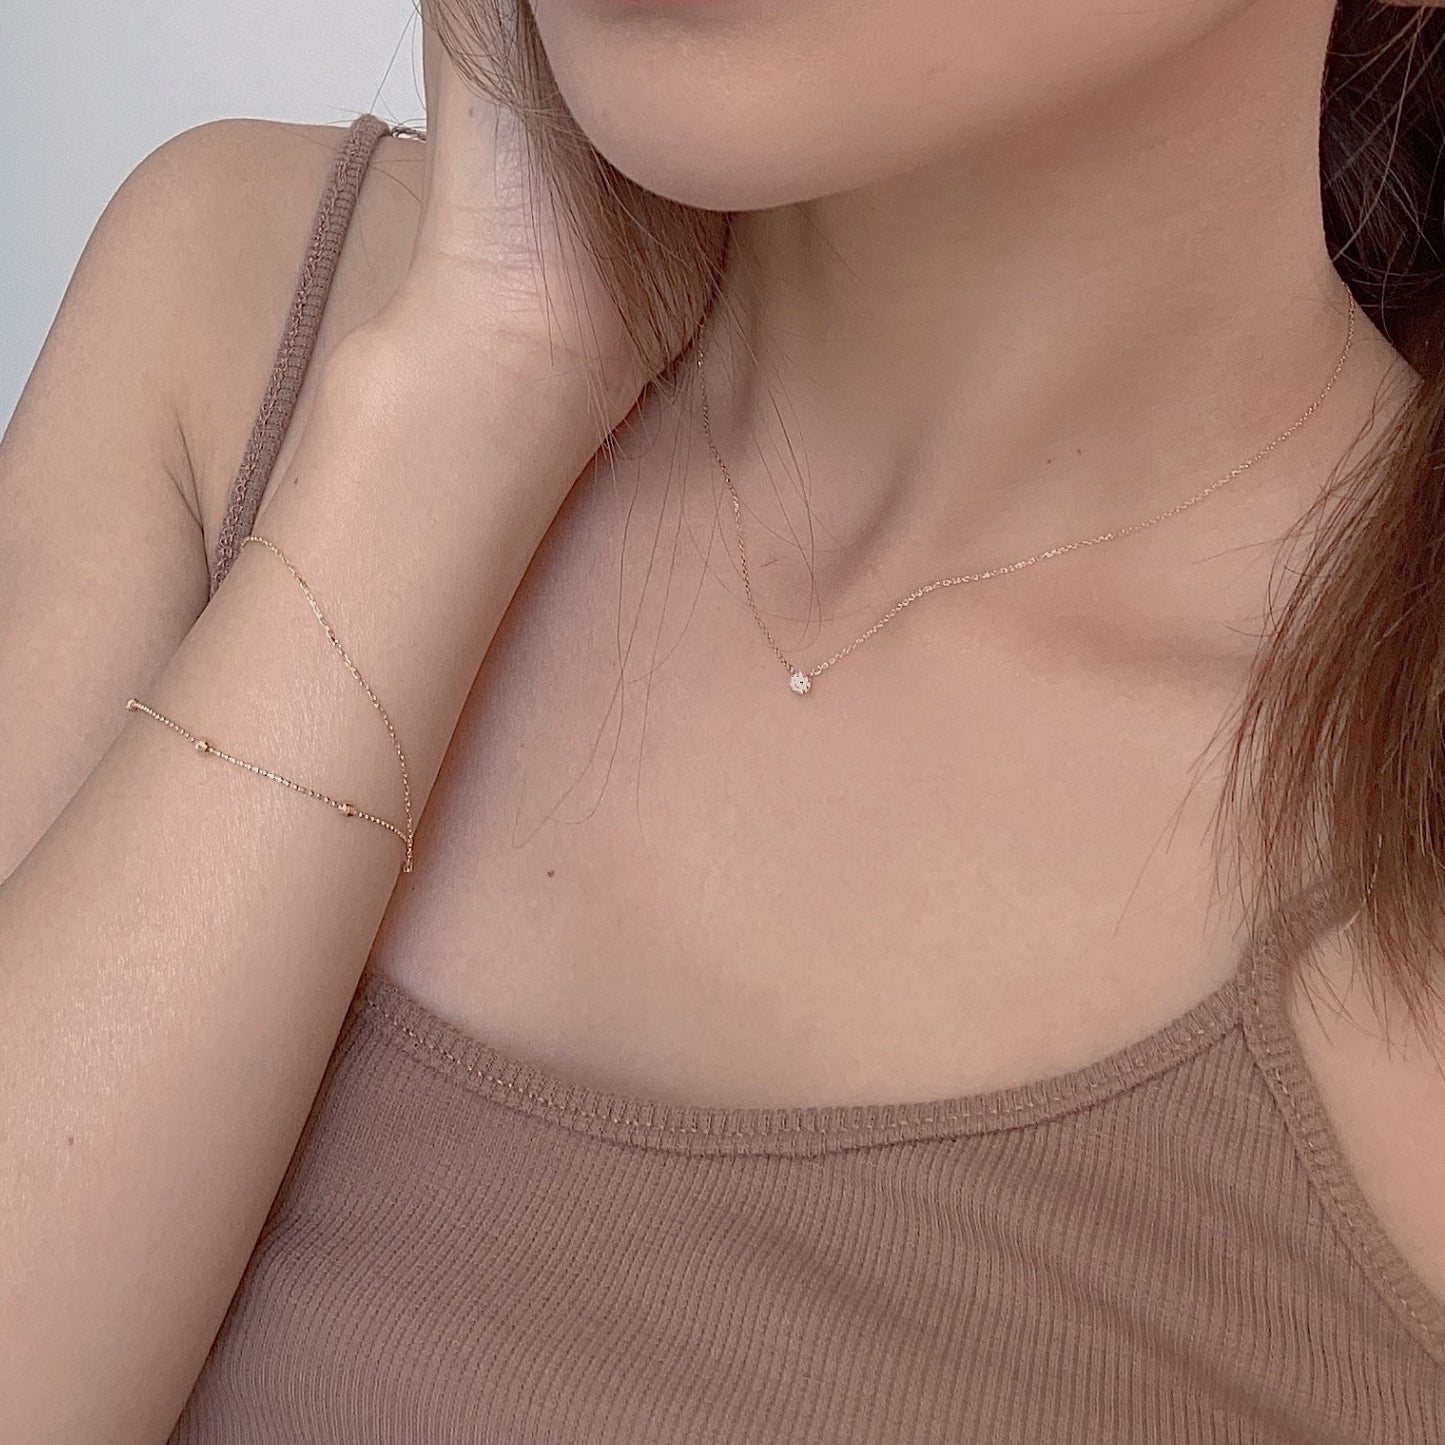 日本製 18K金minimal diamond necklace 鑽石頸鏈